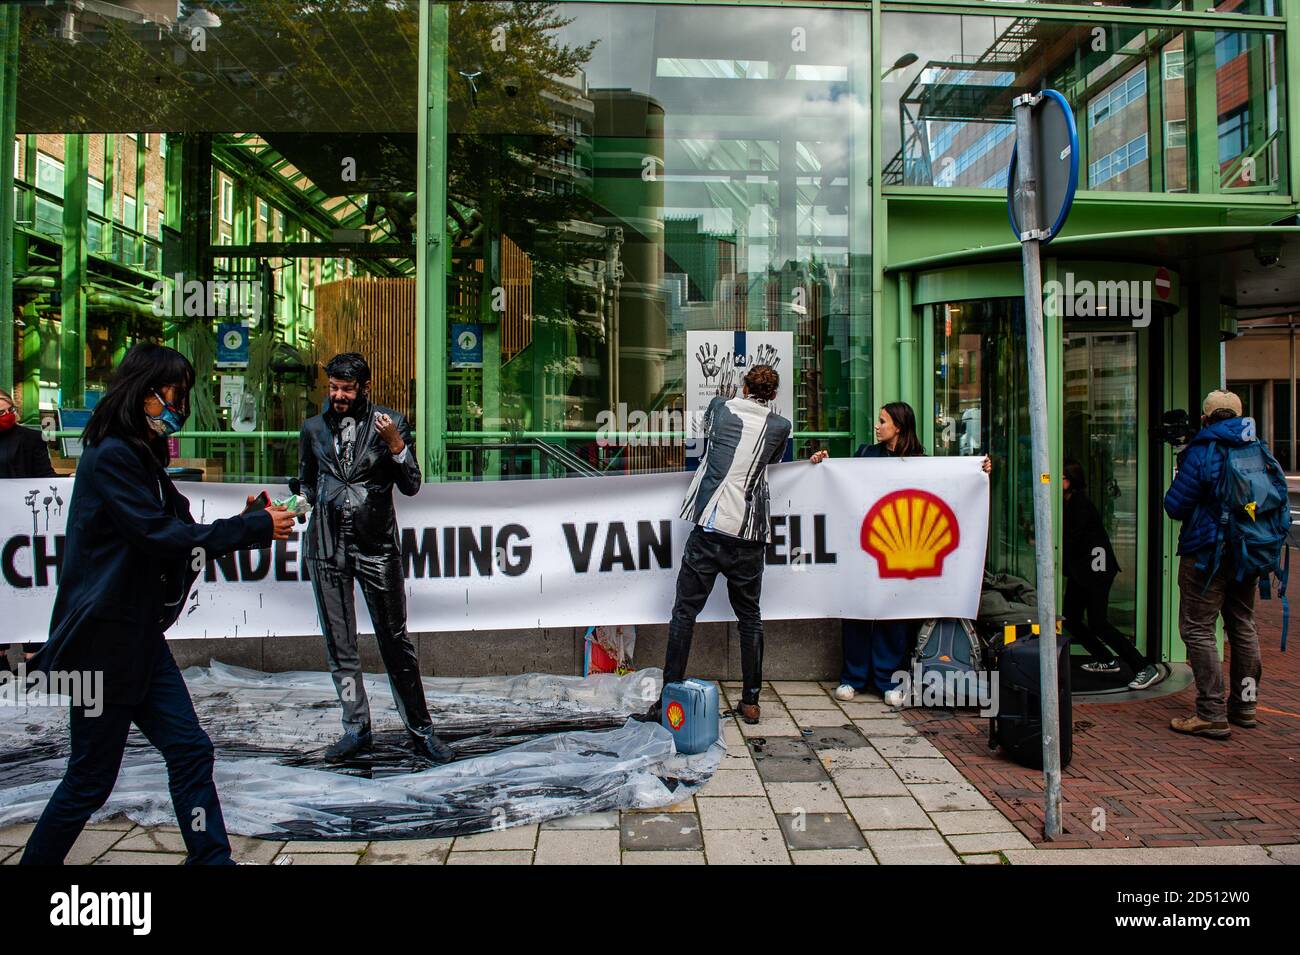 Mehrere Klimaaktivisten sahen, wie sie Handdrucke von gefälschtem Öl an der Fassade hinterließen.das Wirtschaftsministerium (EZK) organisiert einen Klimatag mit dem Ziel, die Niederlande mit "Spitzenreitern" zu inspirieren, die Treibhausgasemissionen bis 2030 zu halbieren. Verschiedene Klimagruppen protestieren gegen die Teilnahme von Marjan van Loon, Direktor von Shell Netherlands. Im Eröffnungspanel des Klimatages. Mehrere Klimaorganisationen tauchten vor dem Gebäude des Ministeriums für Wirtschaft und Klimapolitik in Den Haag gegen Shell als Ehrengast am "Klimatag" auf. Das Klima Stockfoto